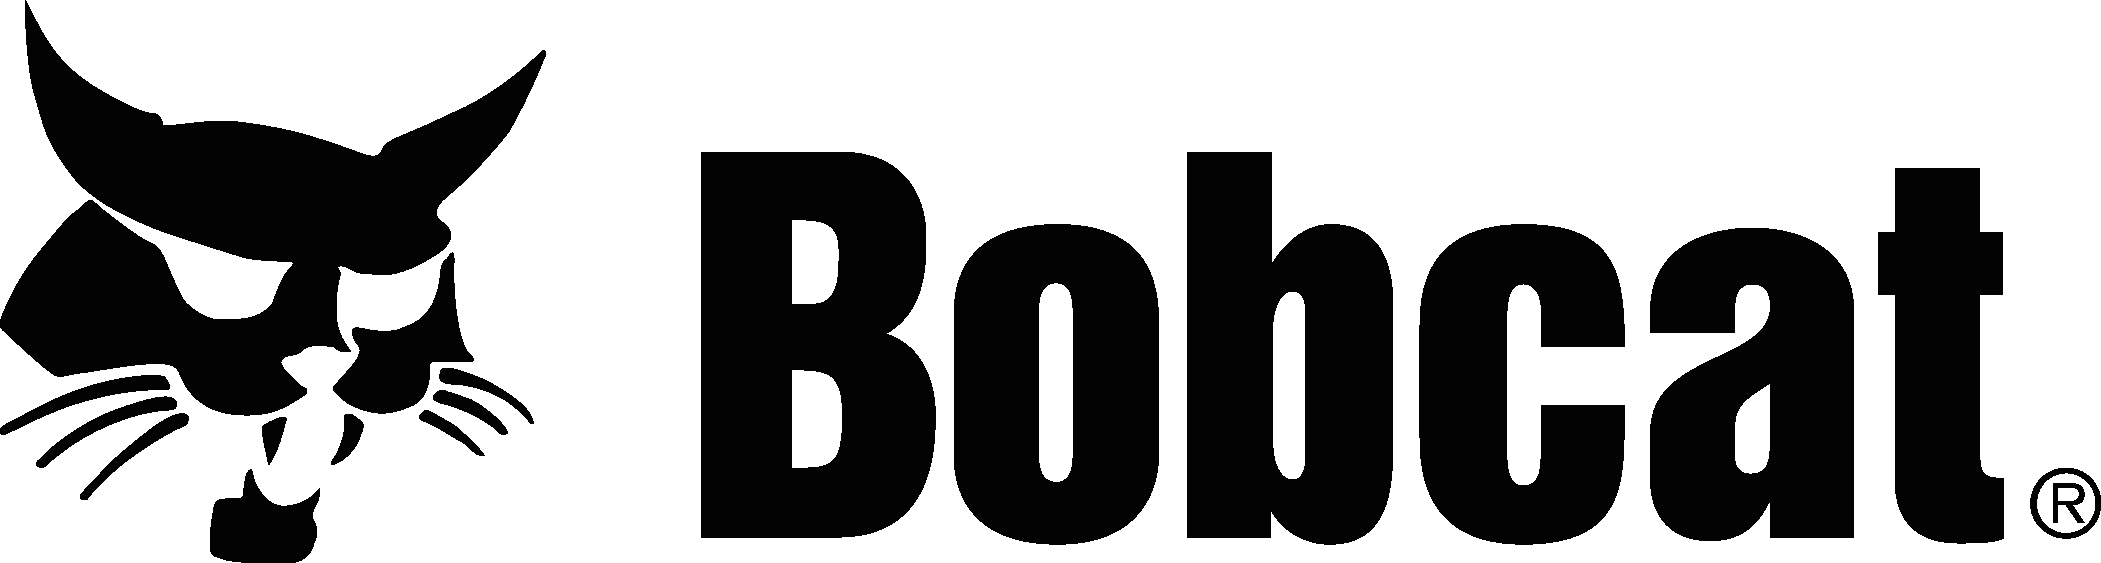 Bobcat Logo png